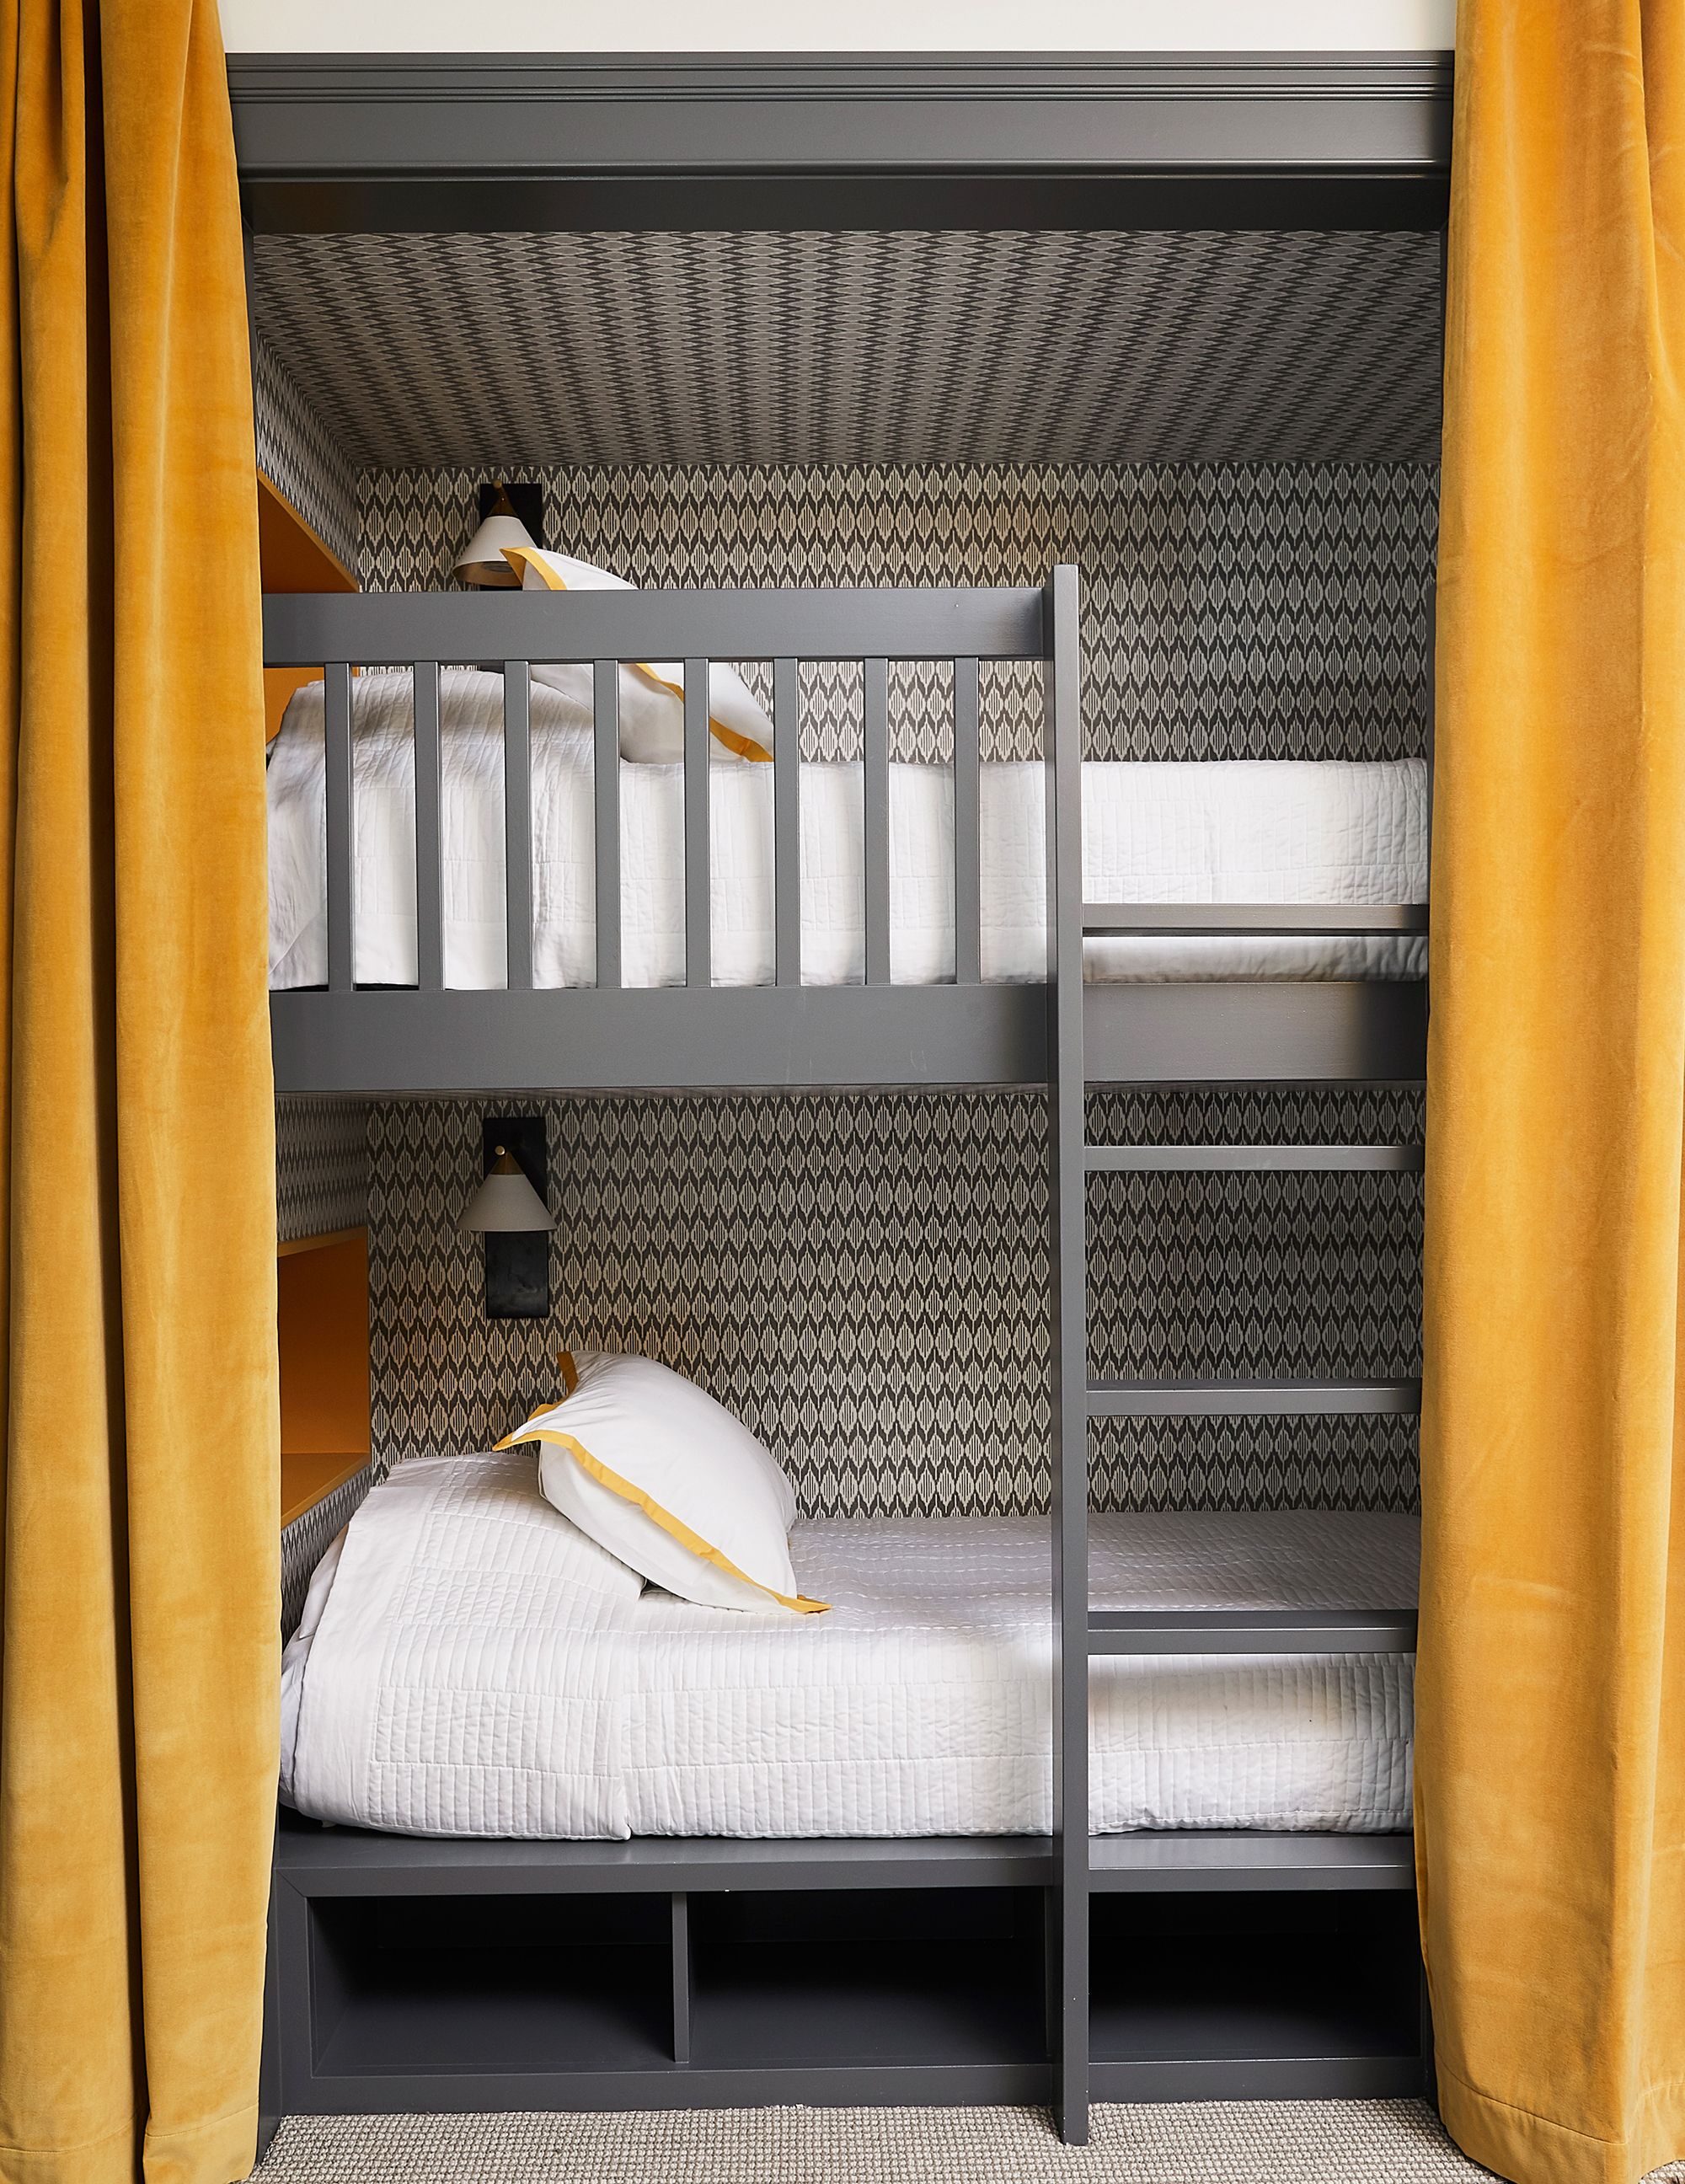 quadruple bunk beds for sale